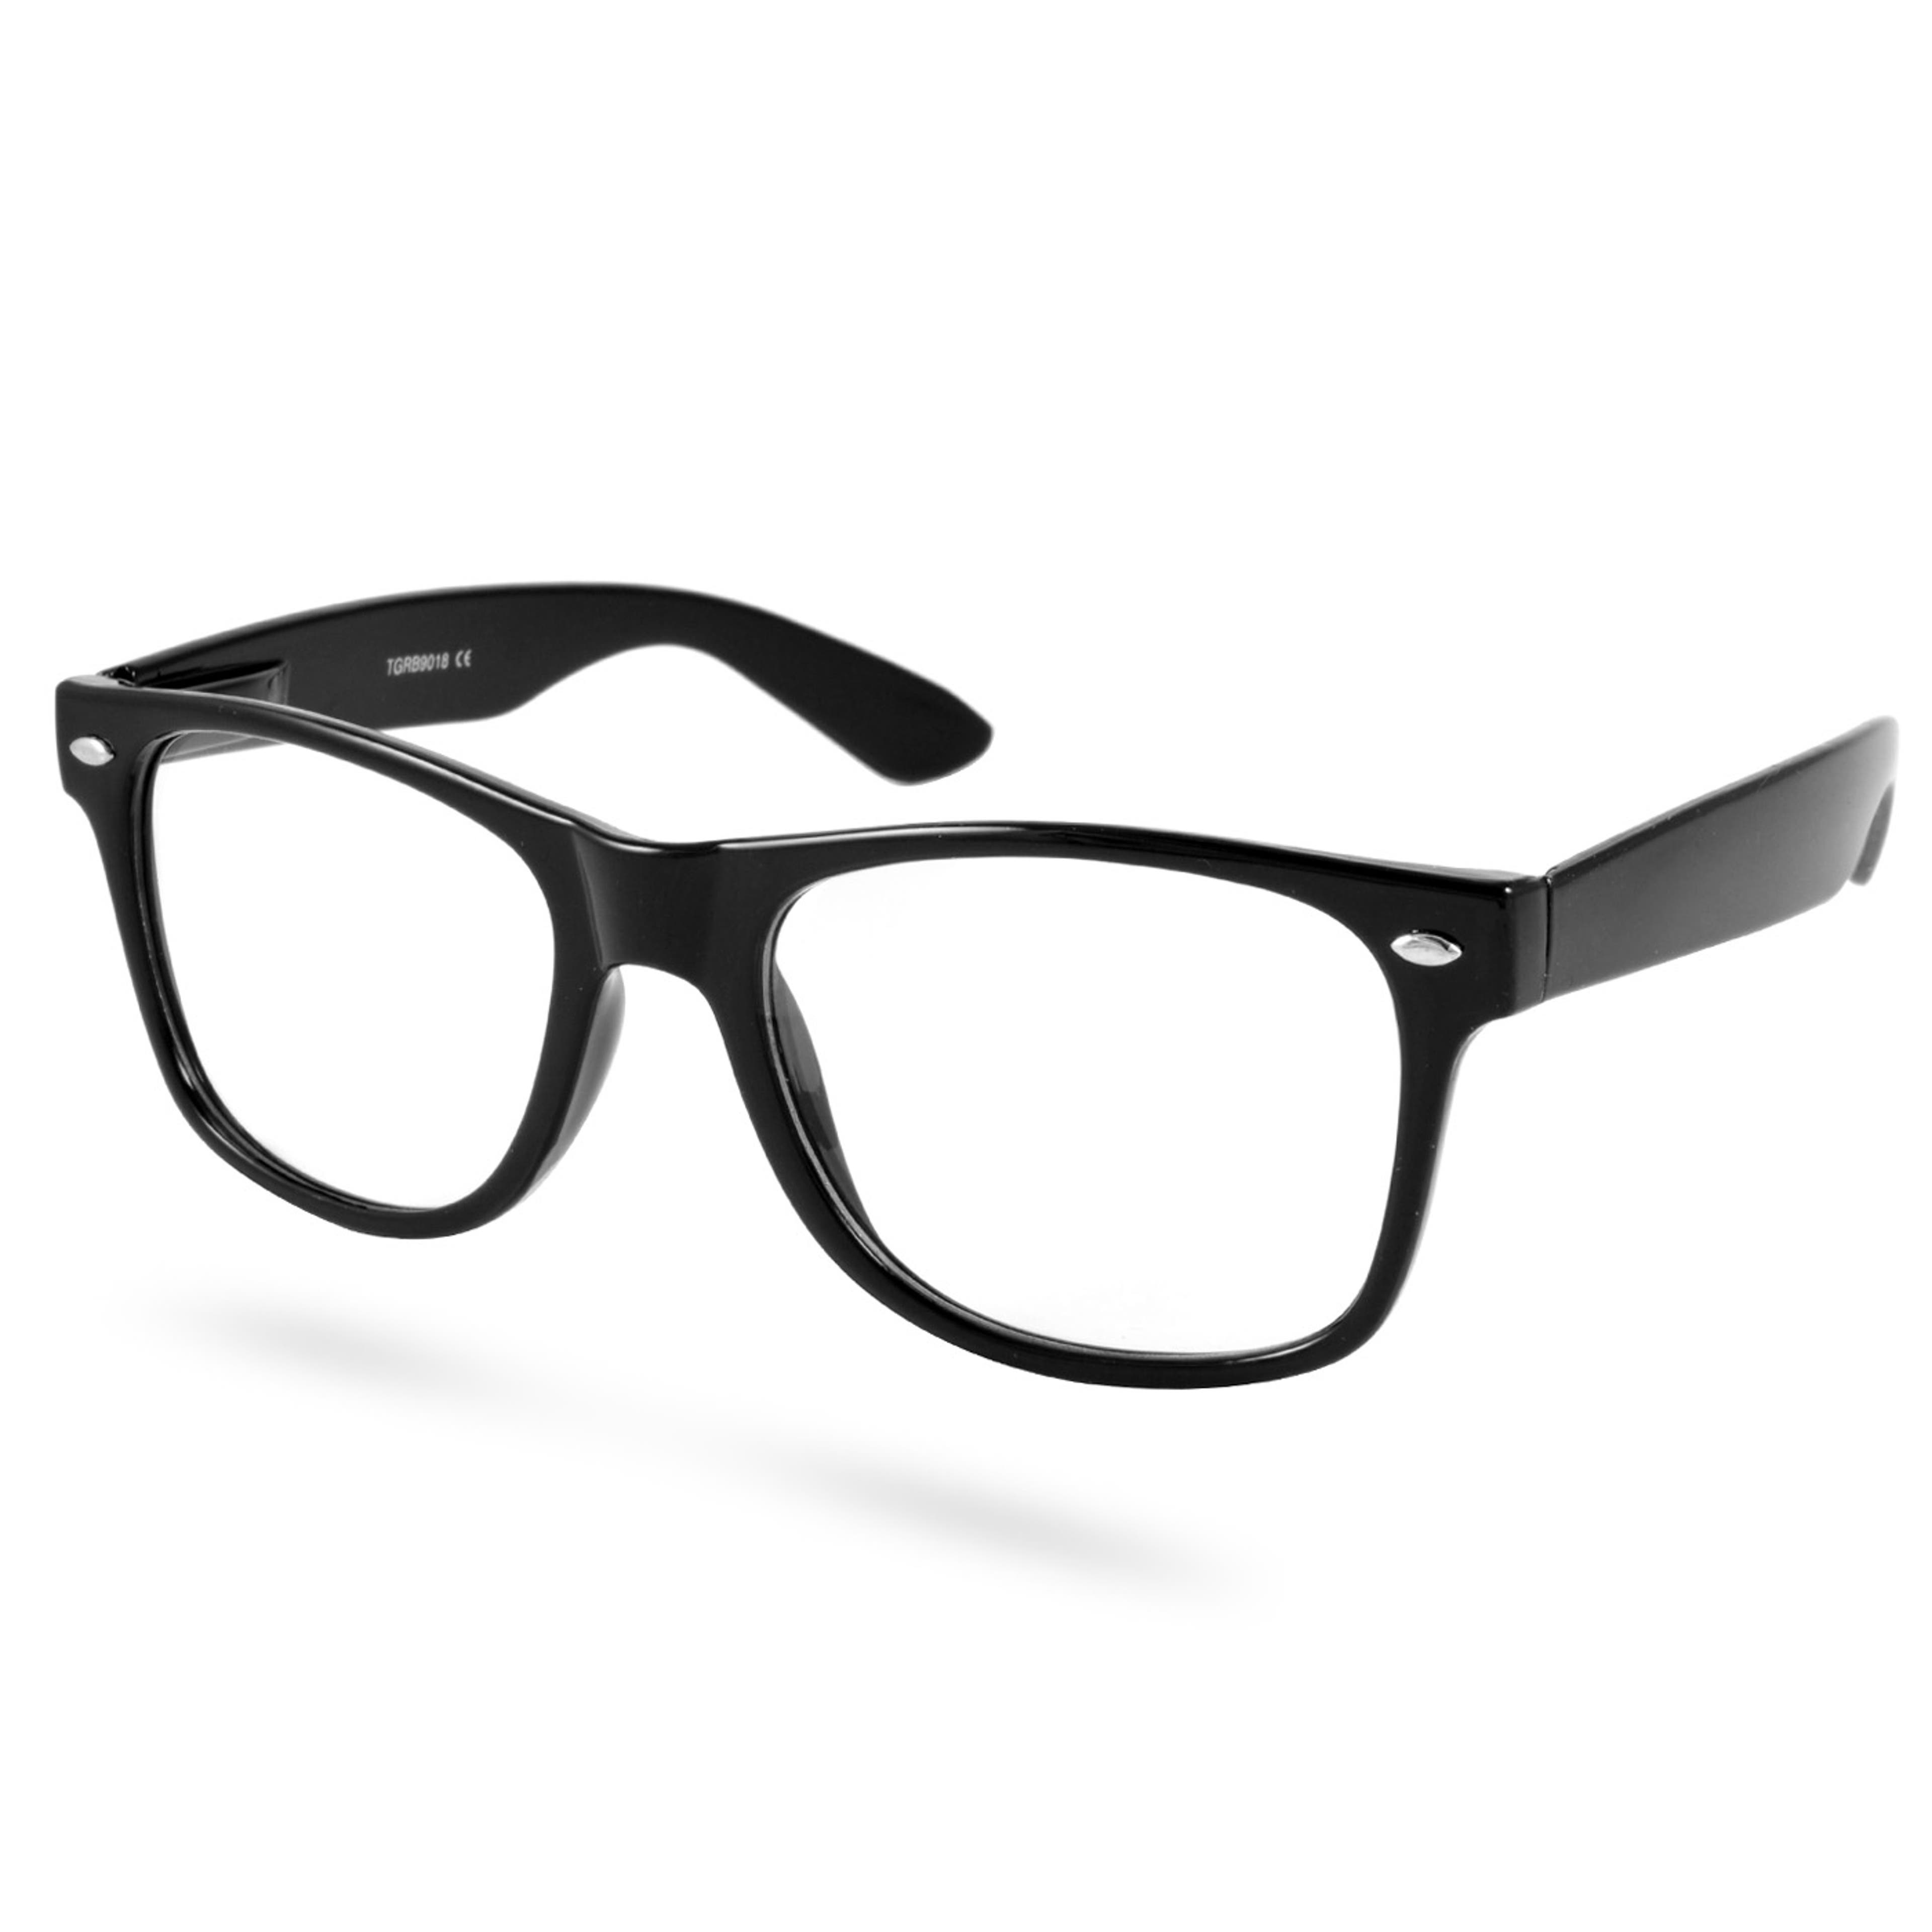 Schwarze Retro Brille Mit Transparenten Brillengläsern